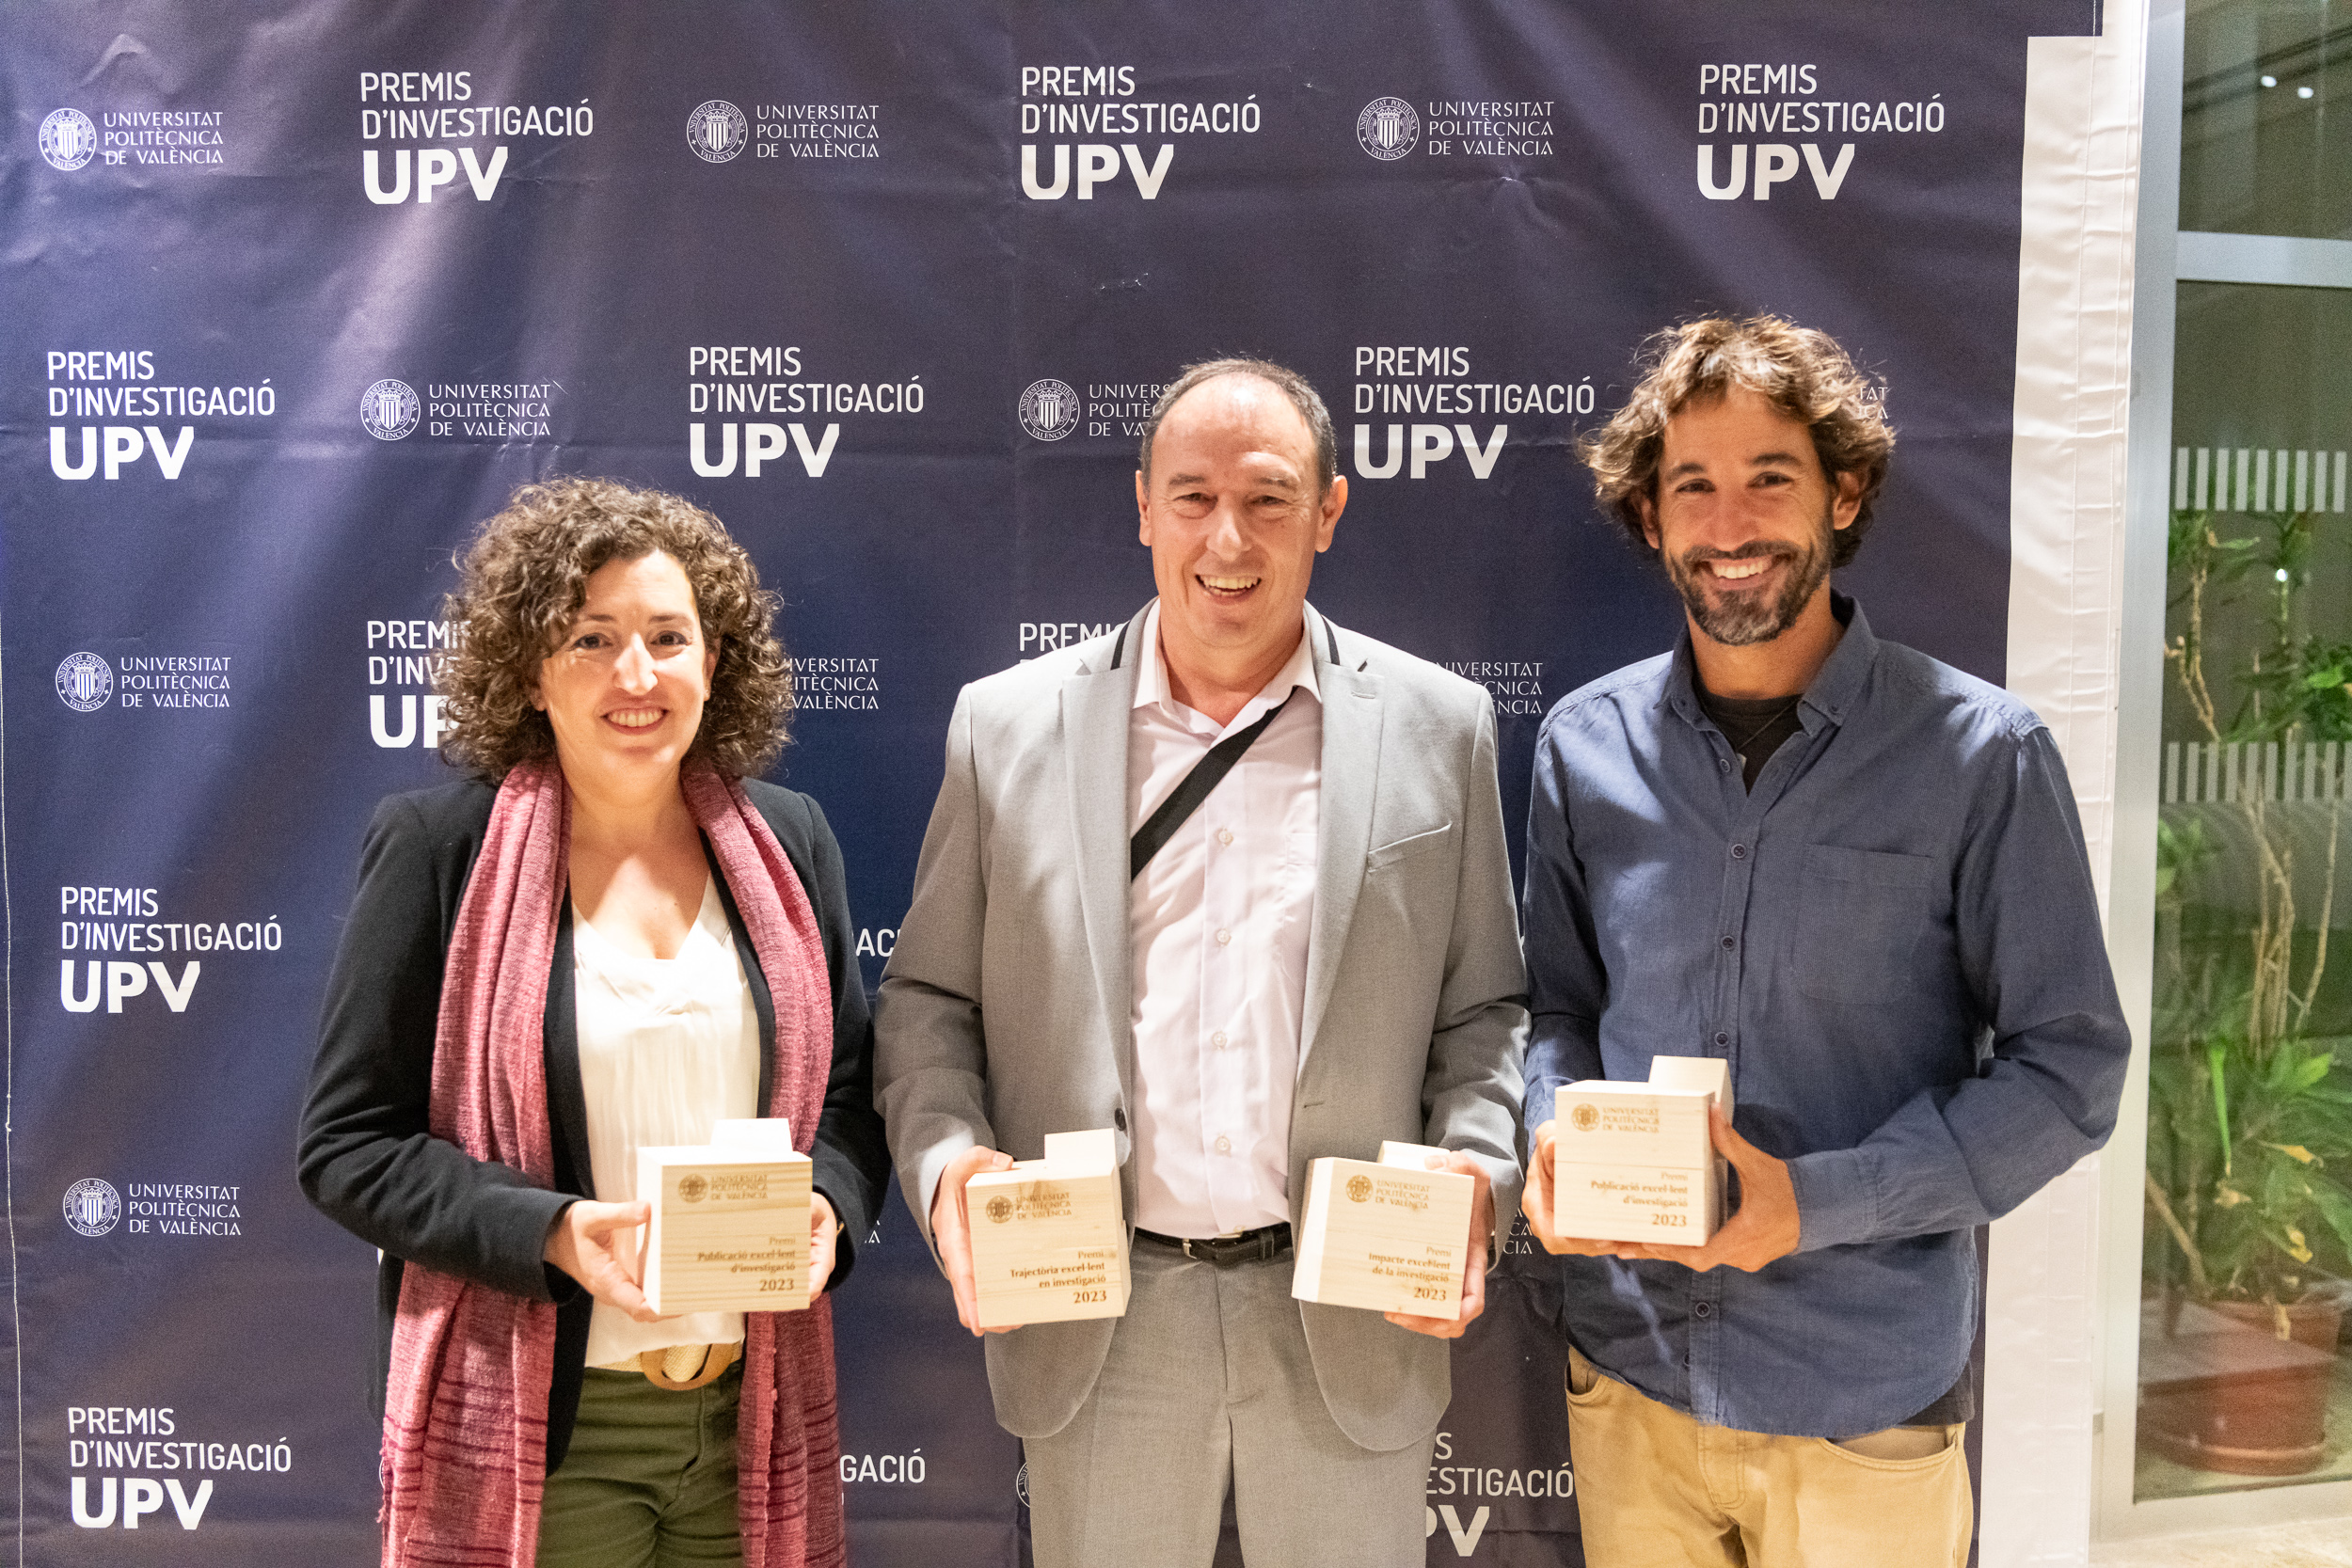 Premis Investigació UPV